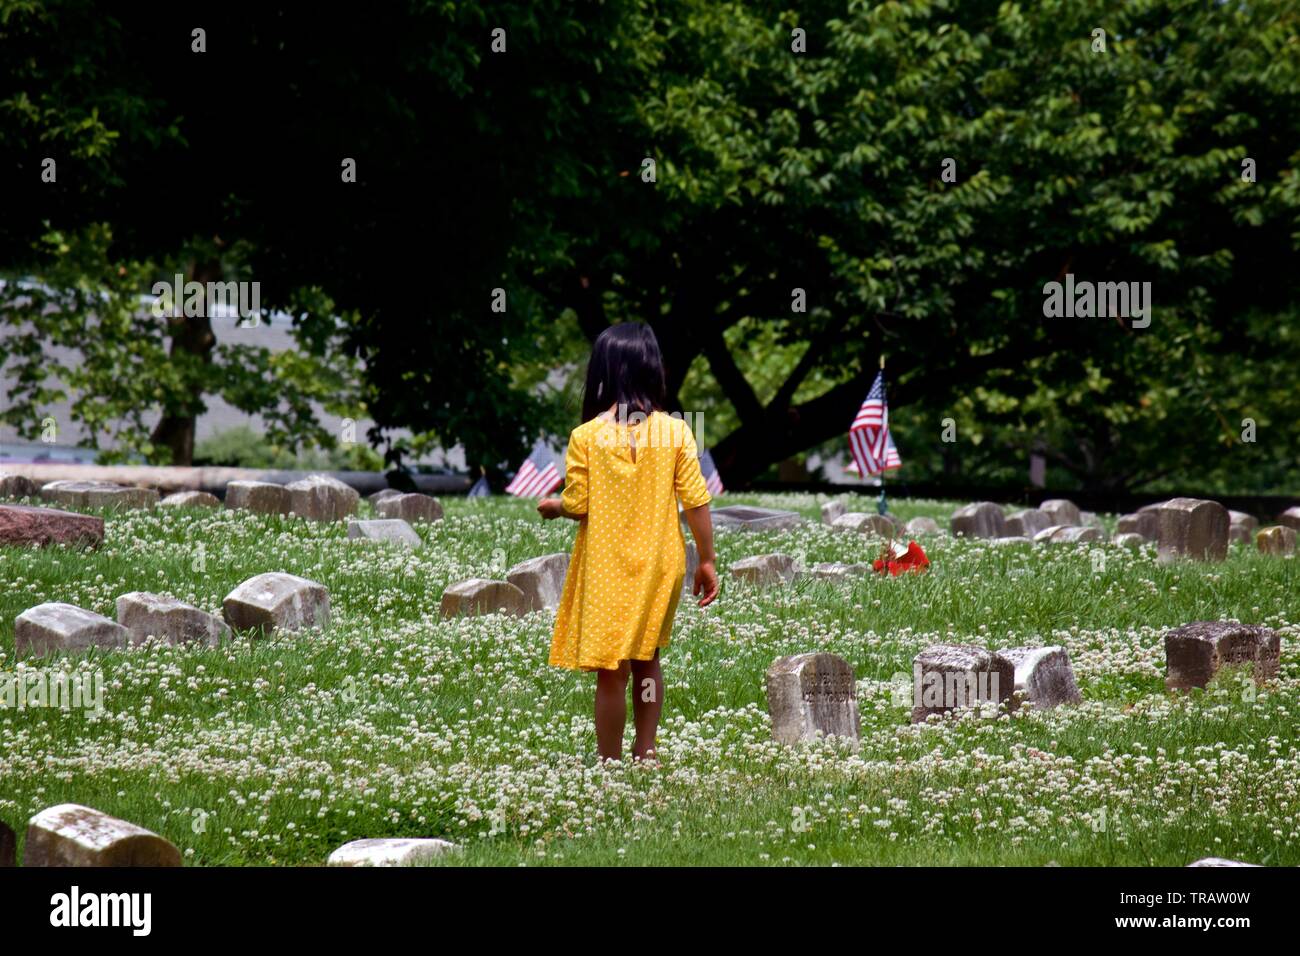 Plymouth Meeting, PA, USA - Juni 1, 2019: Ein junges Mädchen in gelber Kleidung nimmt Blumen zwischen den Gräbern in einem Quaker Friedhof. Stockfoto